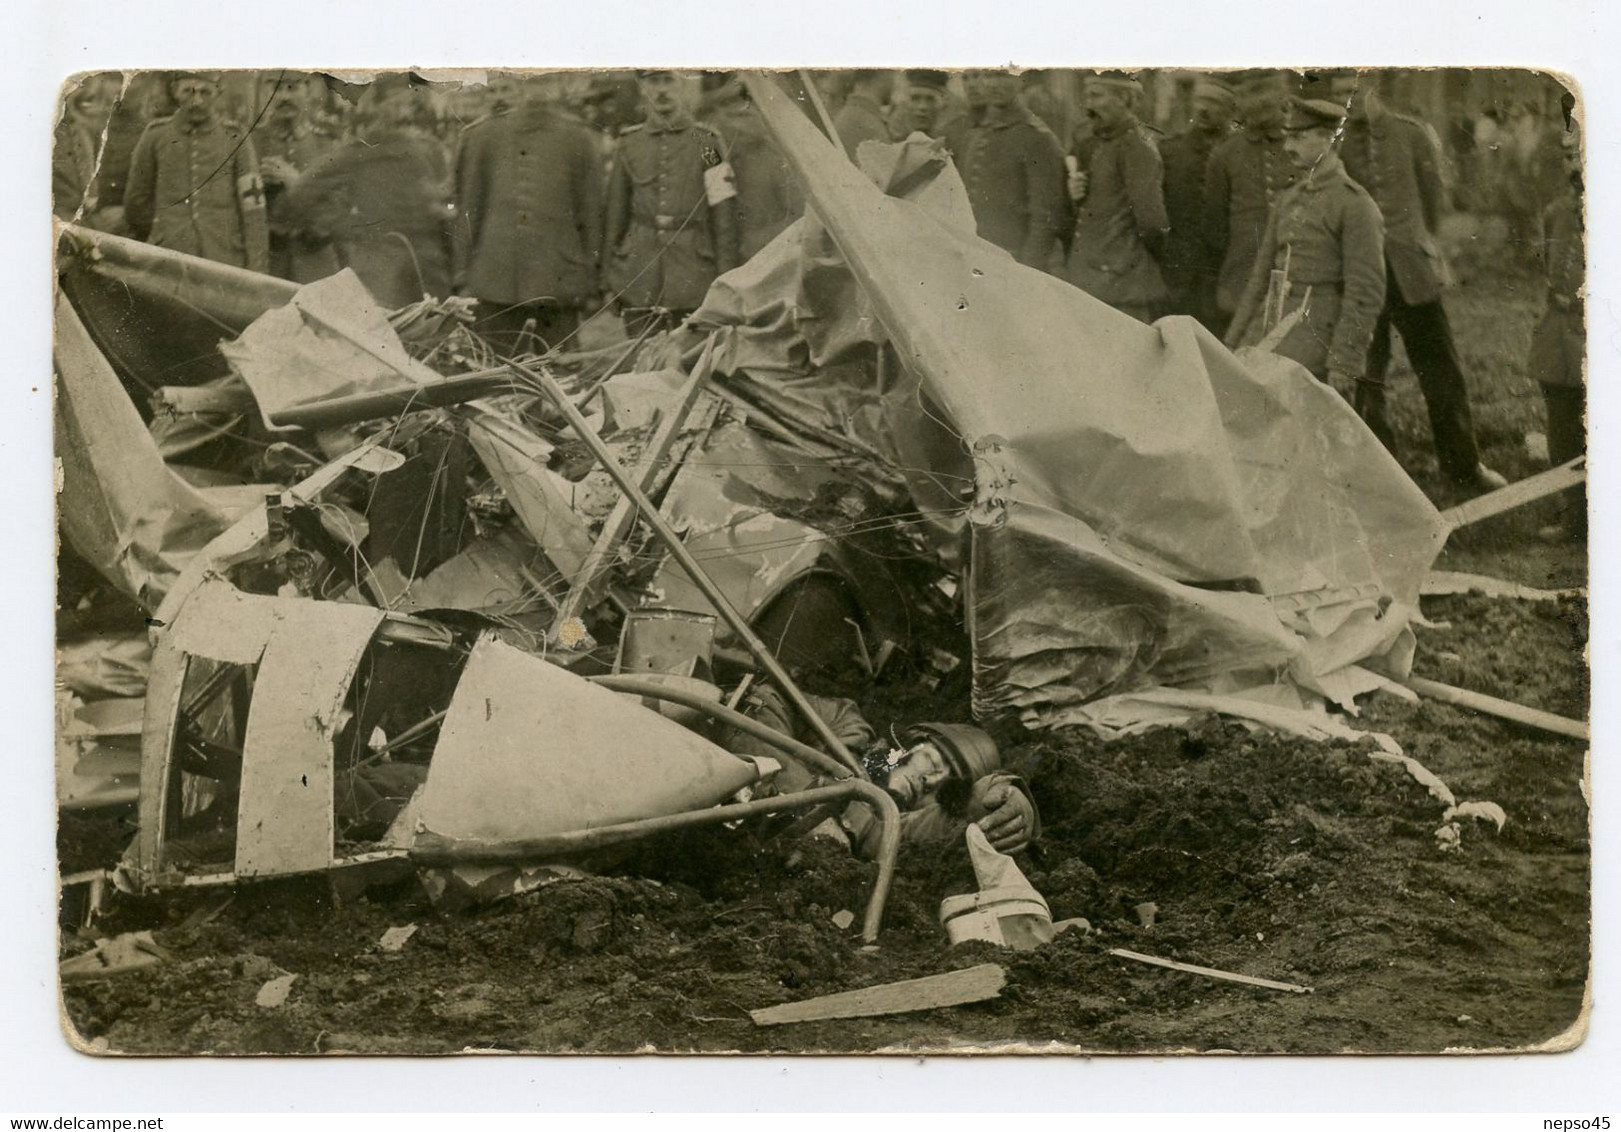 Carte Photo De Guerre 1914-18.Aviation. Aviateur. Avion Abattu.Pilote Mort.Cadavre D'un Soldat,voir Photos - Unfälle